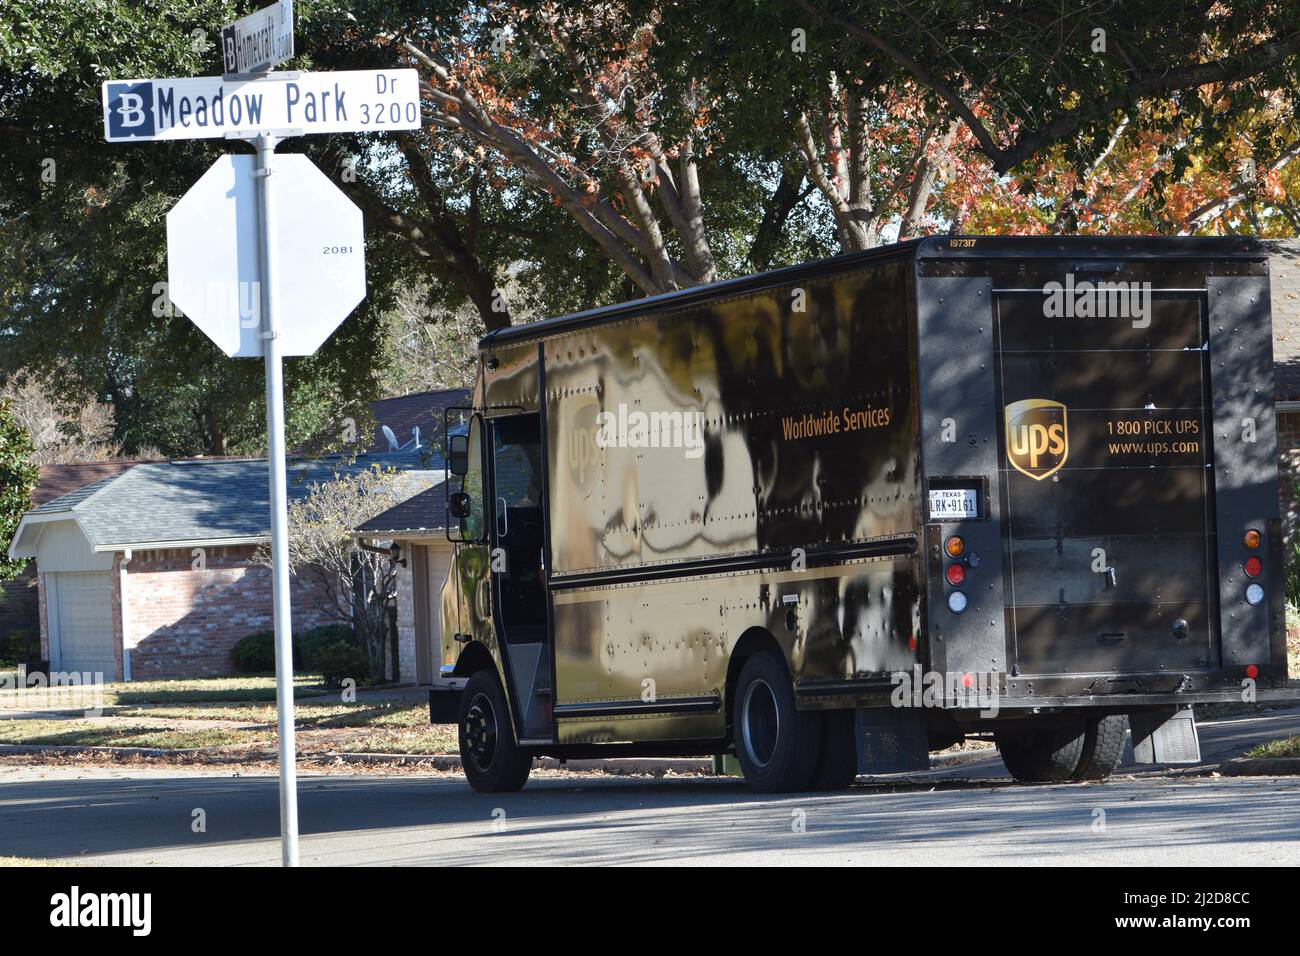 Ein UPS-Lieferwagen fährt durch ein Wohnviertel in Bedford, TX Stockfoto